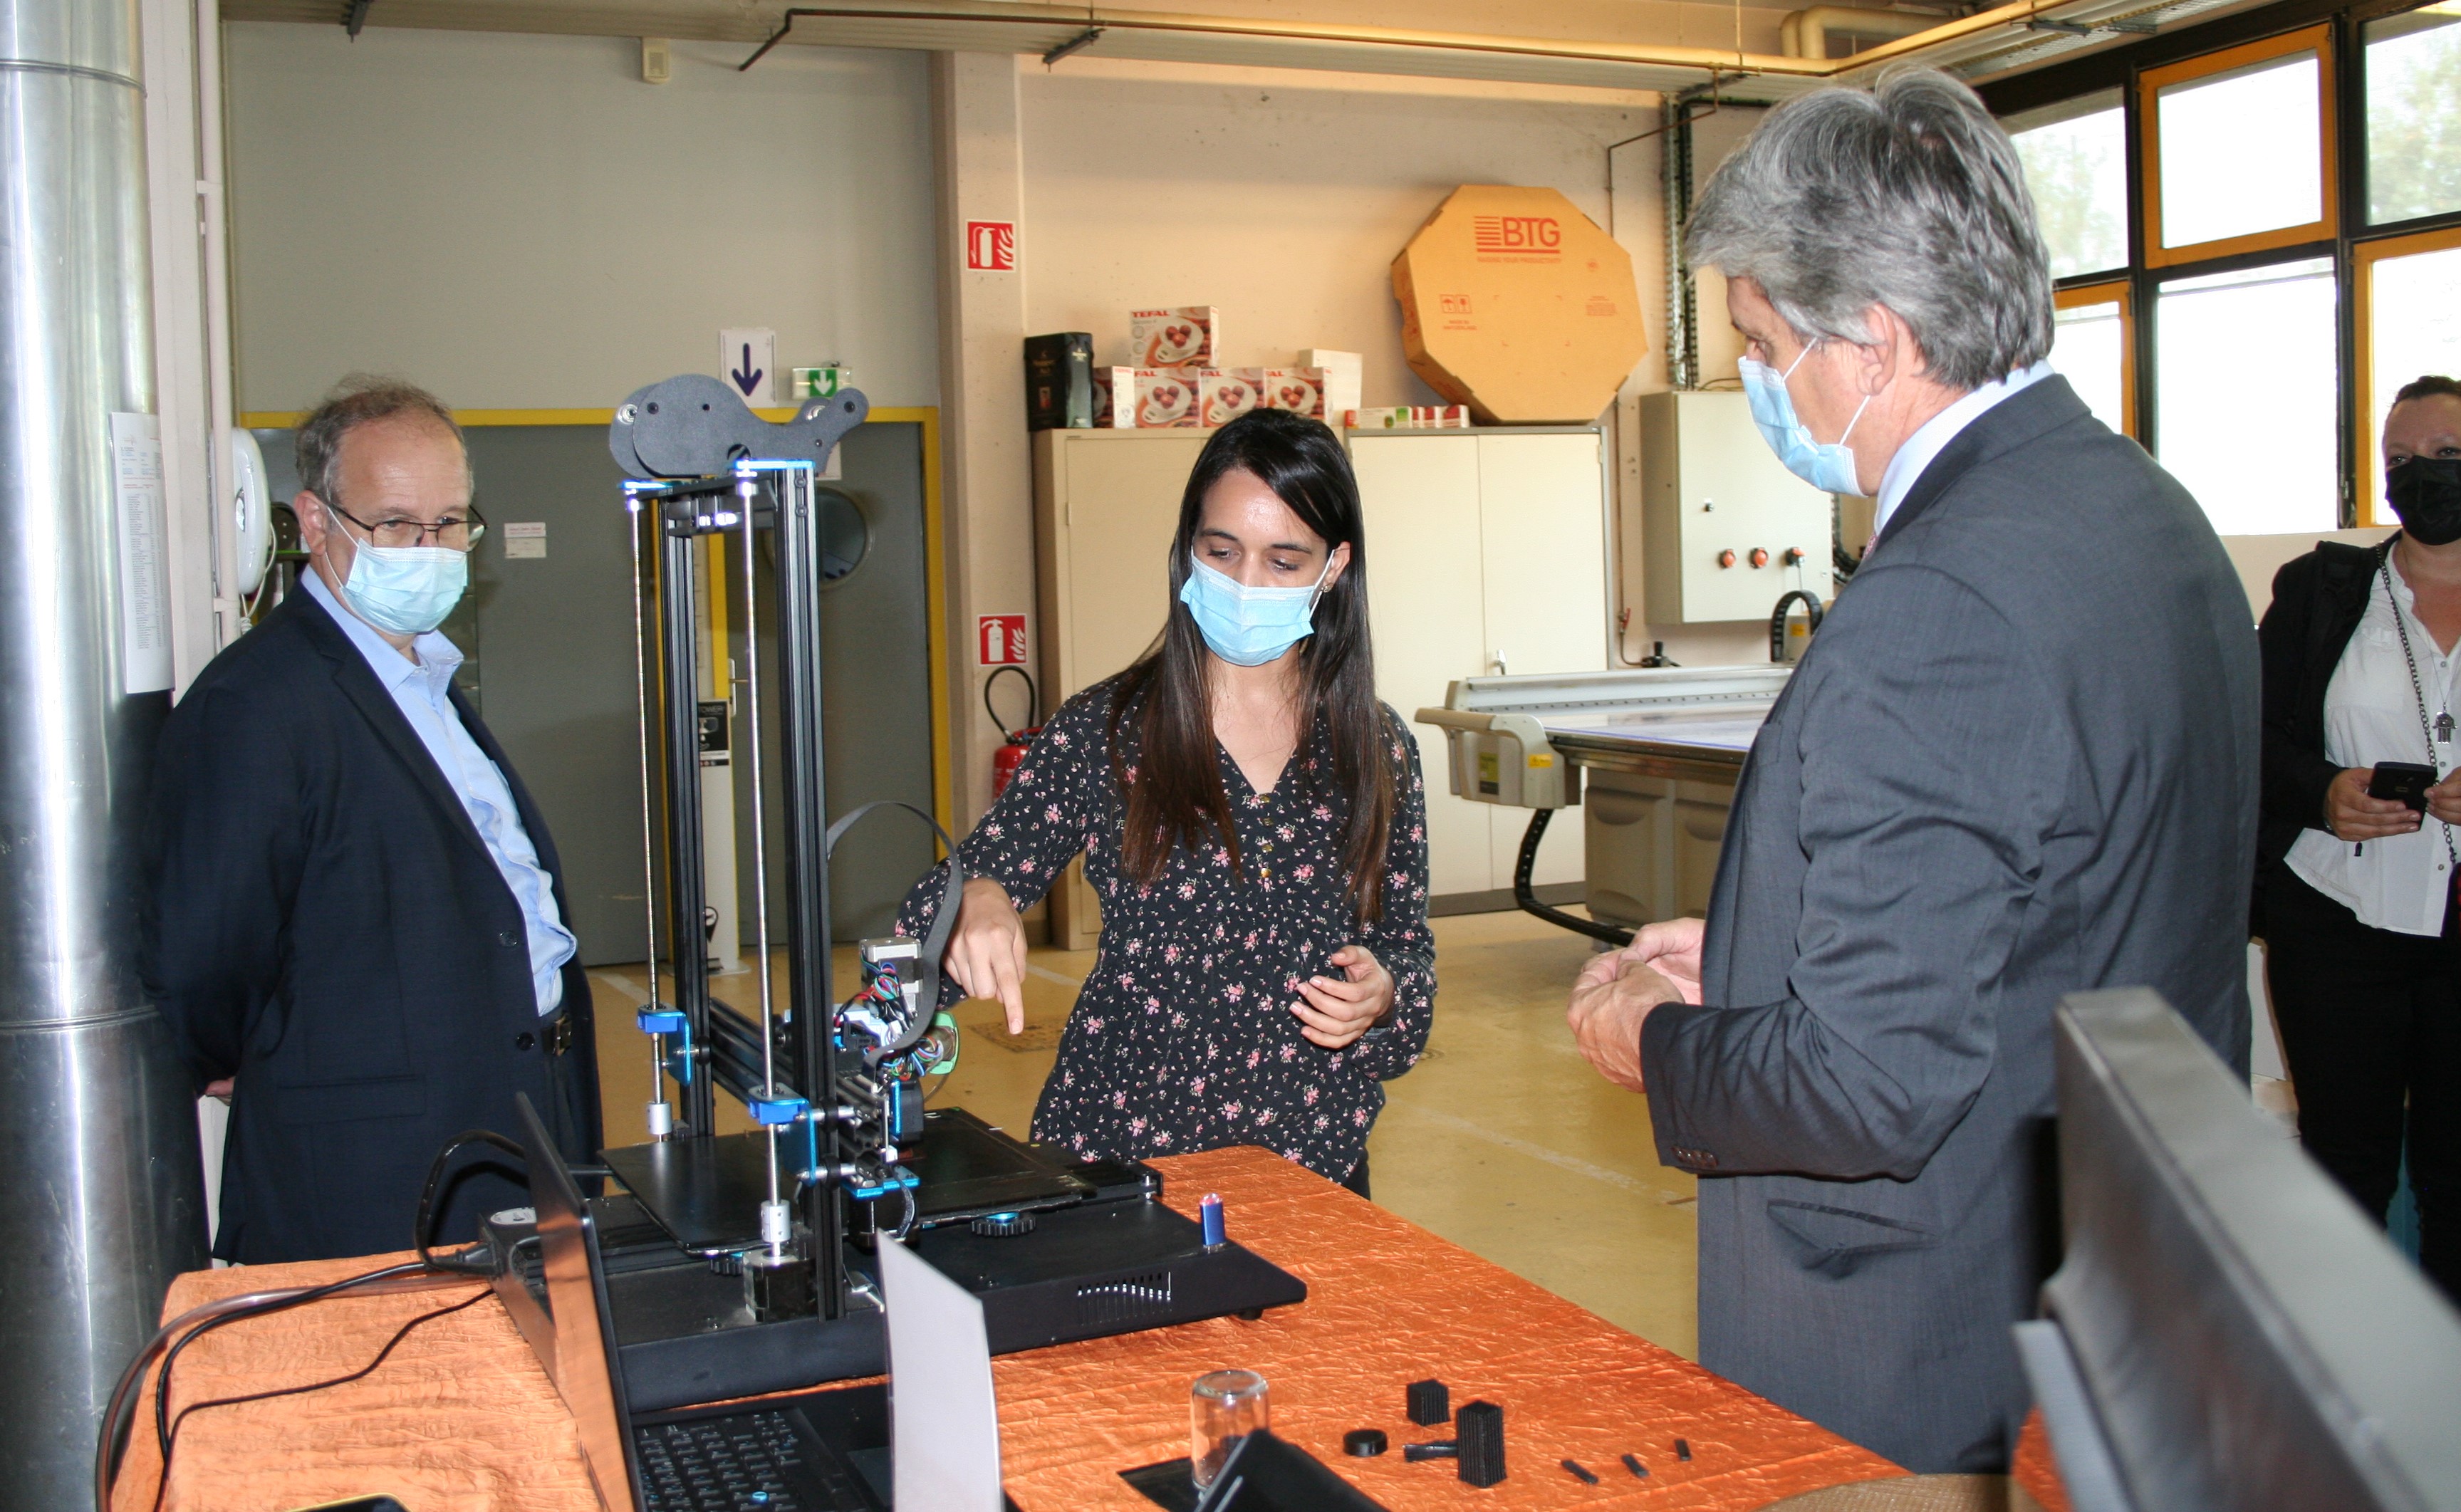 Une membre de l'équipe de Grenoble INP expliquant le fonctionnement d'une machine au recteur Fioni